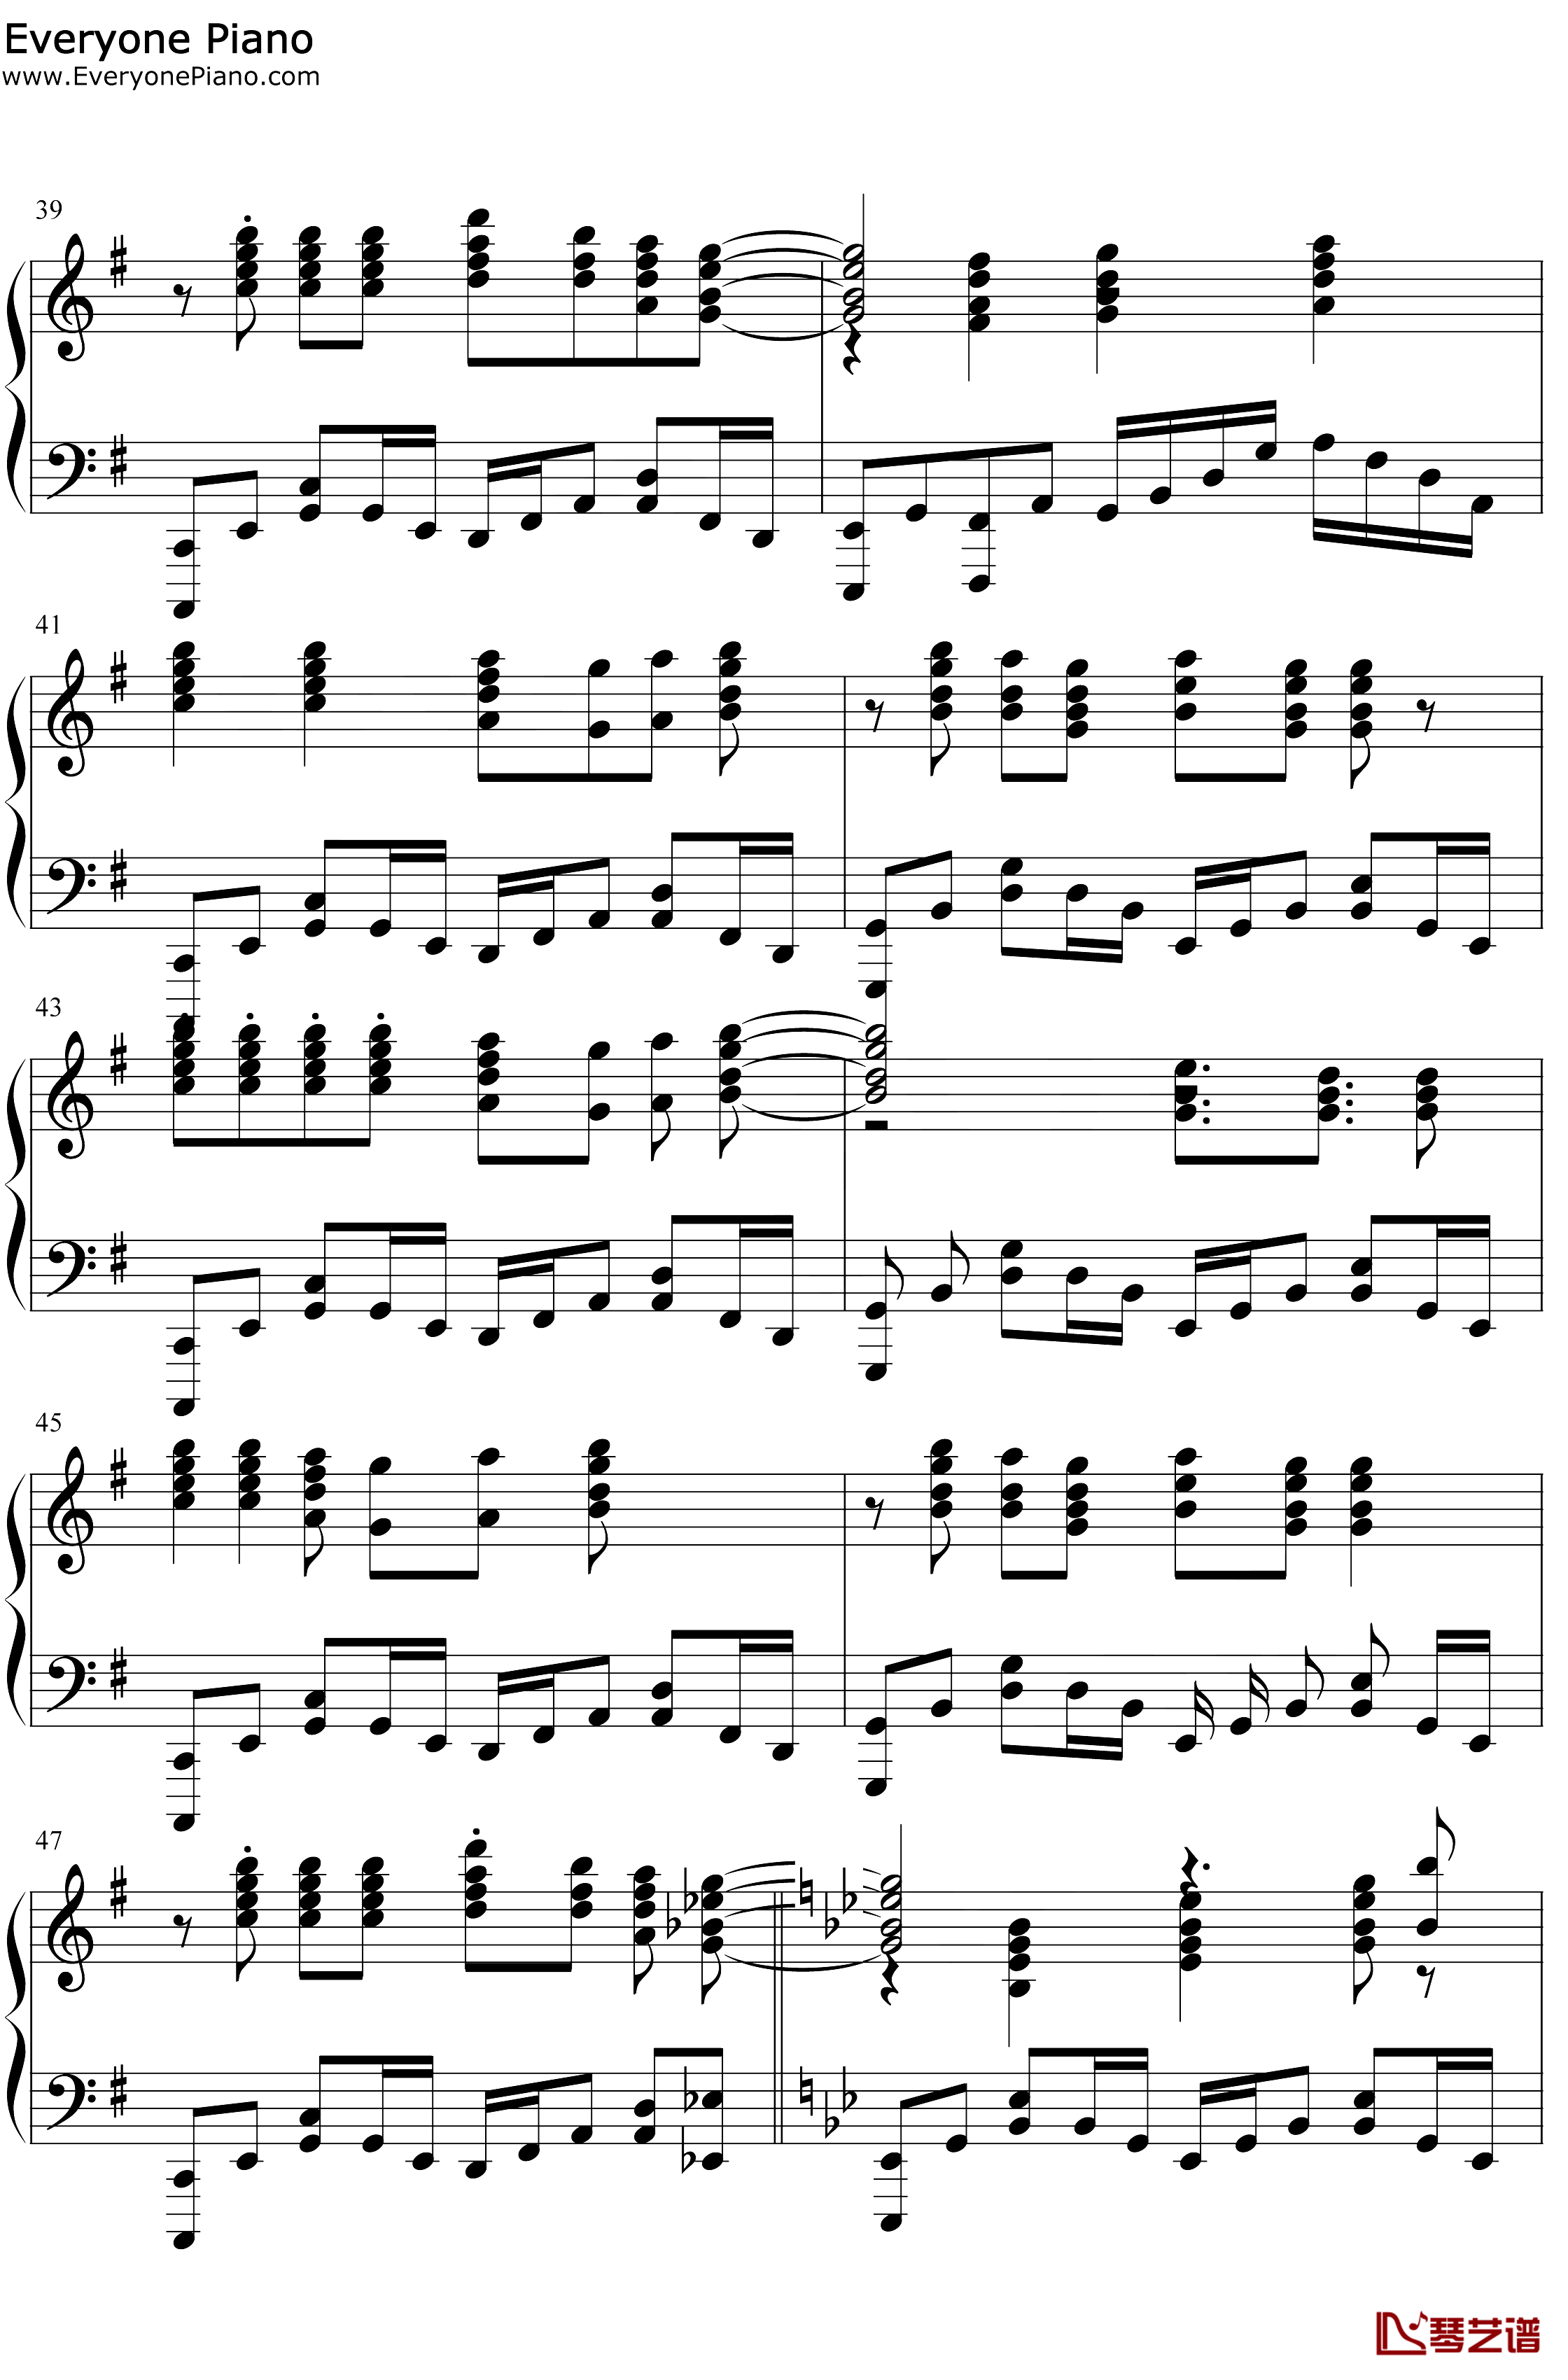 スマイルスキル=スキスキル钢琴谱-麦露烈娜梅维丝珀琳-我不是说了能力要平均值么OP5